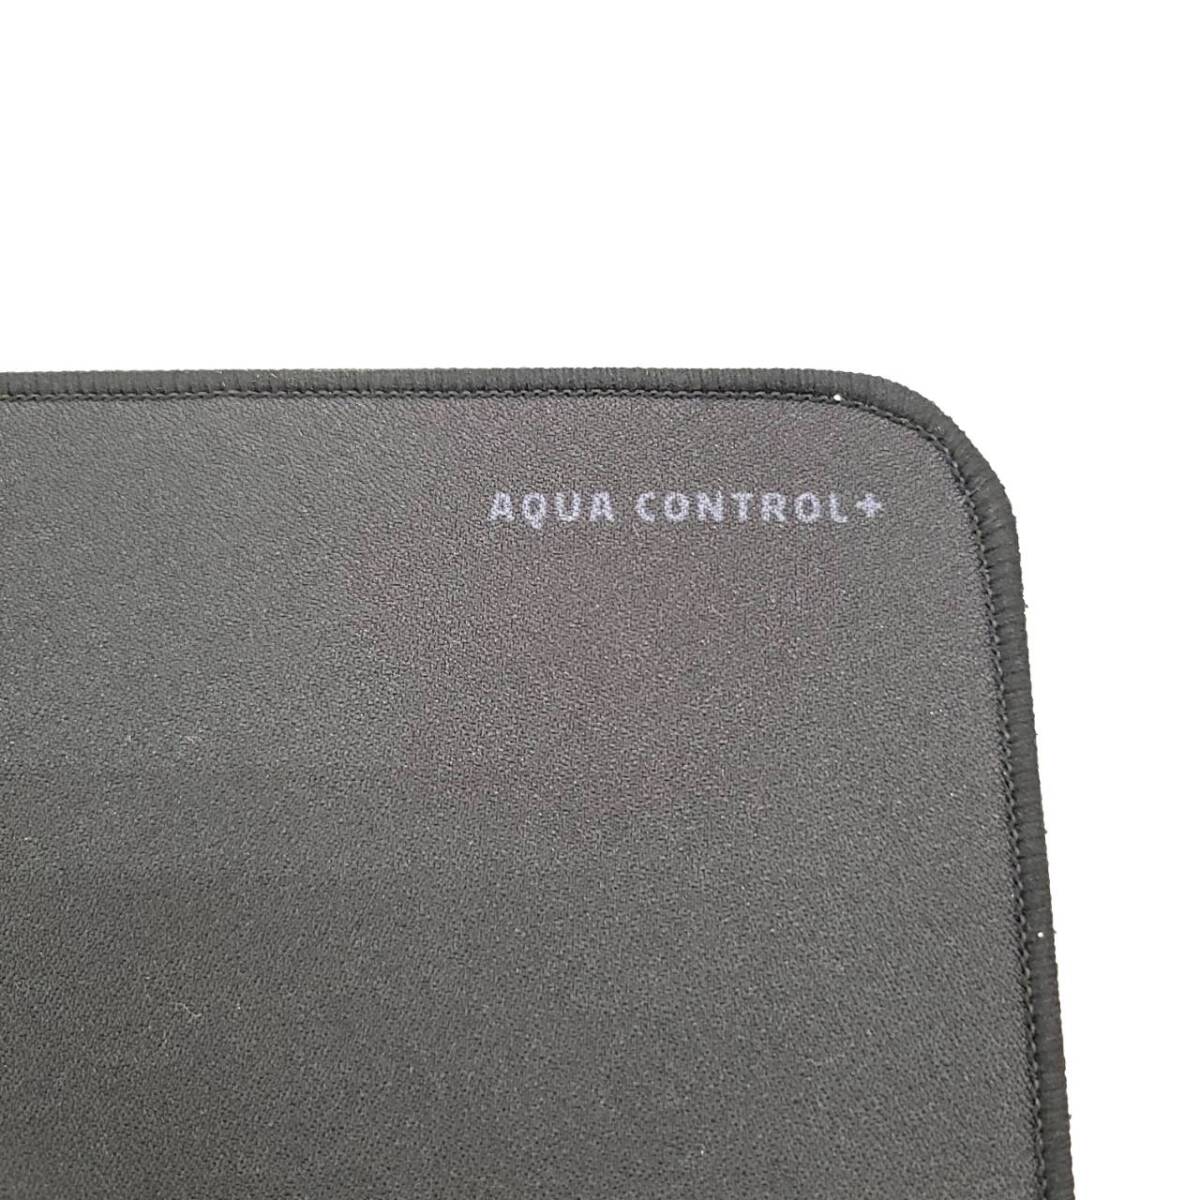 ★【在庫処分価格】X-raypad Aqua Control Plus Black Fly ゲーミングマウスパッド Lサイズ 360x300mm ブラック 滑り止め☆T04-112aの画像4